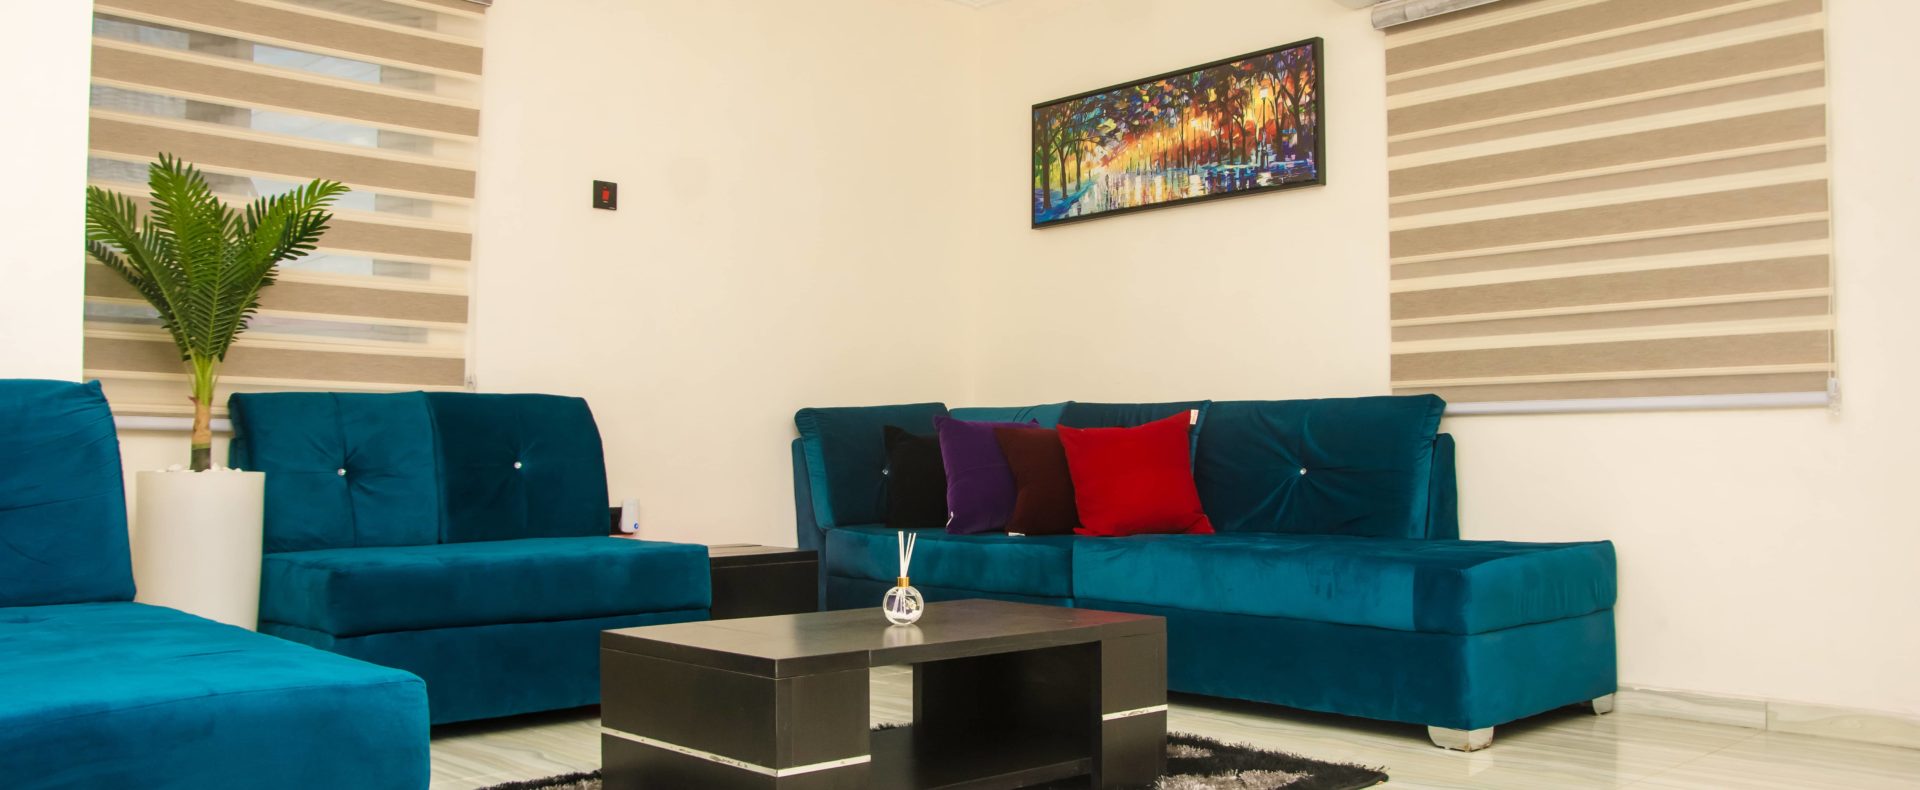 The Pacific Icempire Signature 3 Bedroom Shortlet Apartment In Lagos Nigeria